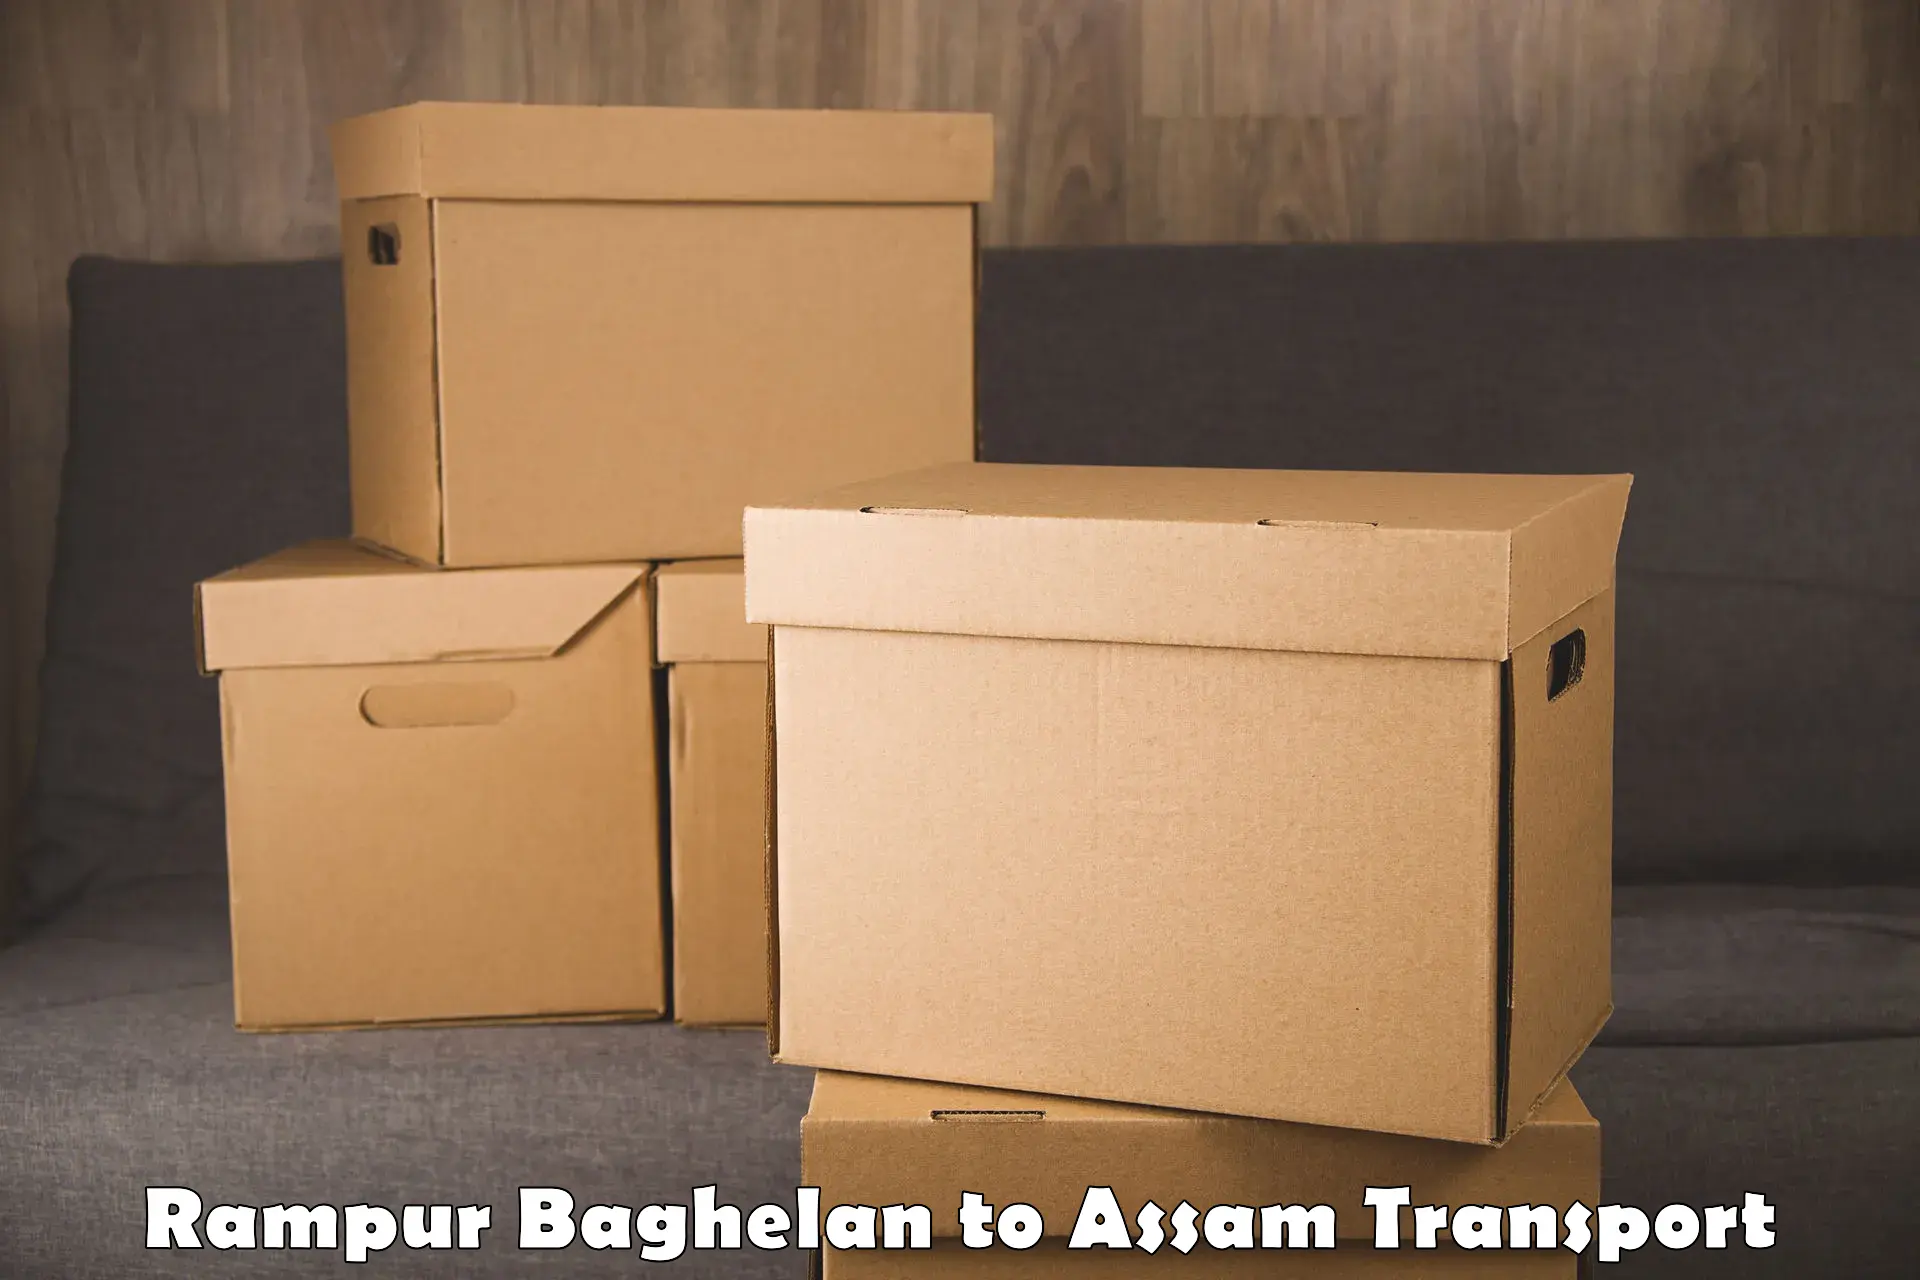 Lorry transport service Rampur Baghelan to Tezpur University